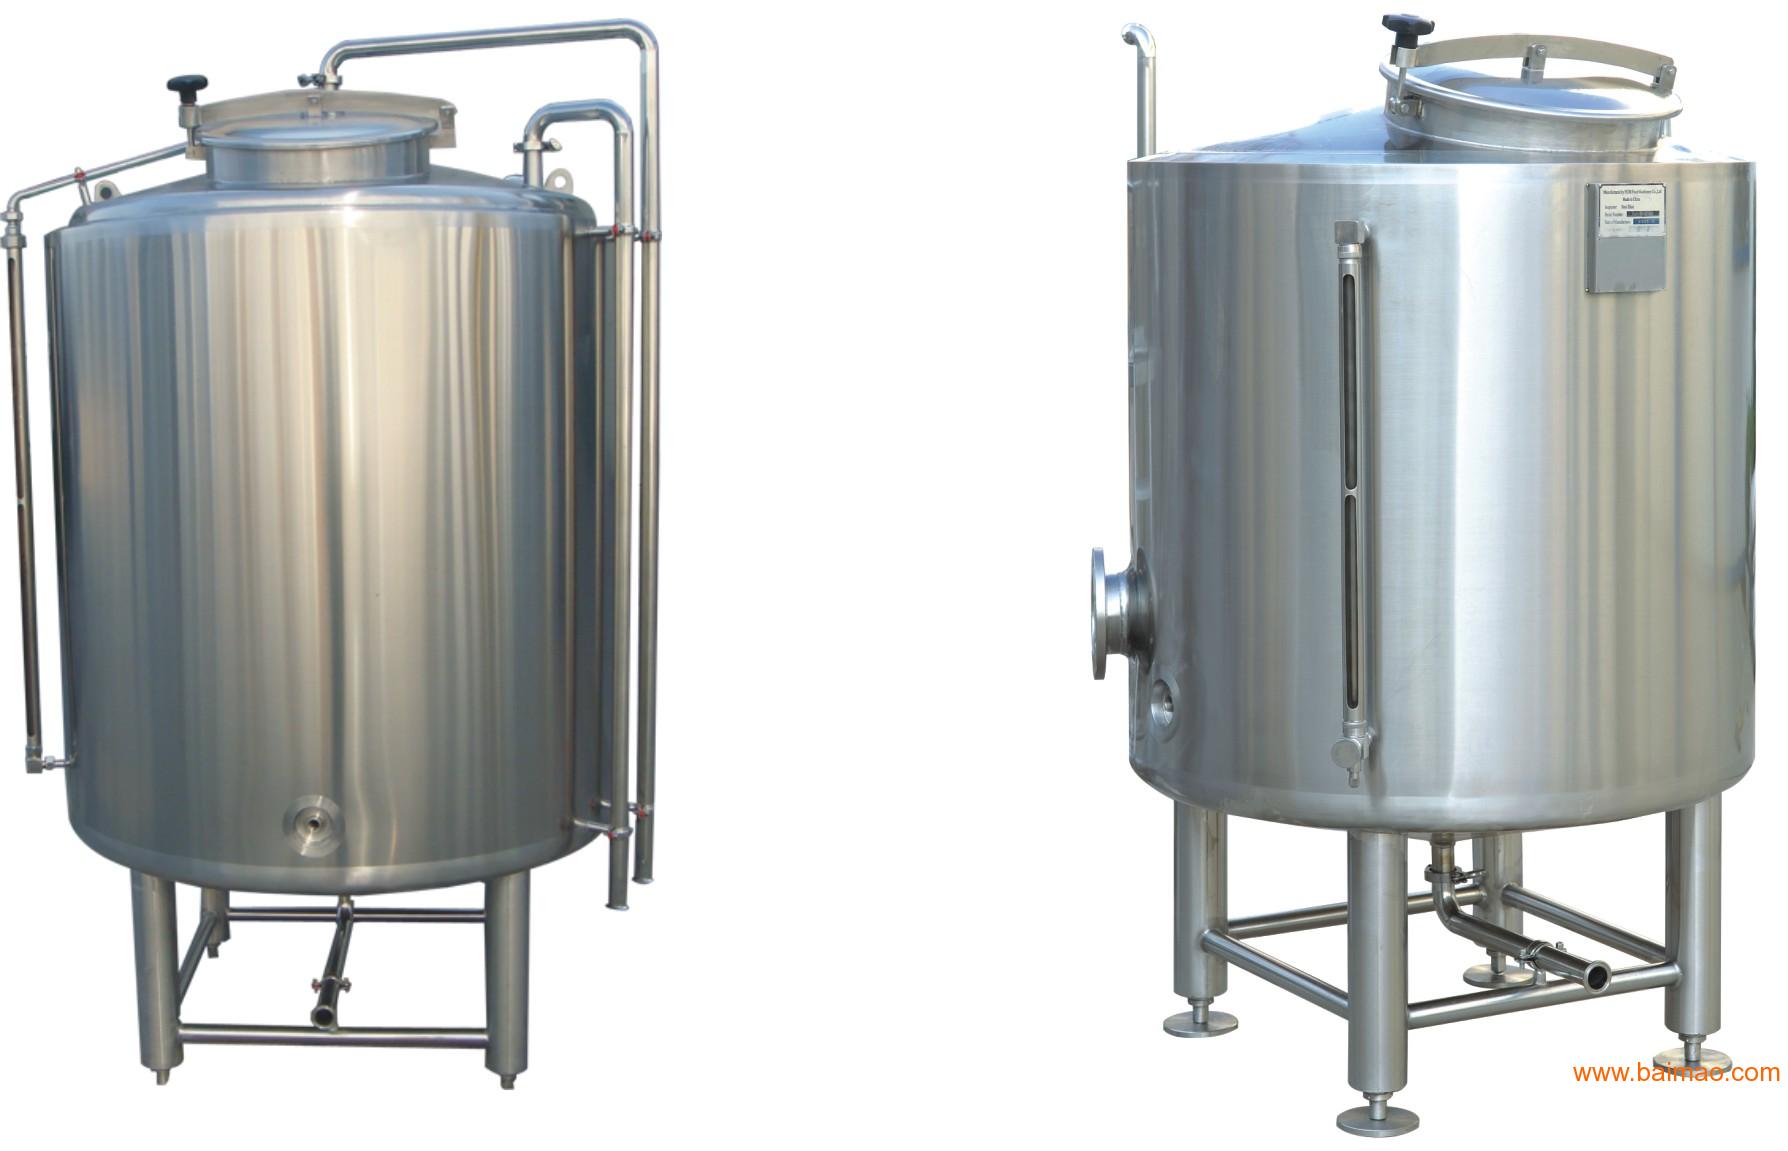 德龙设备(惠州)有限公司批发供应不锈钢发酵罐,清酒罐,日化机械设备